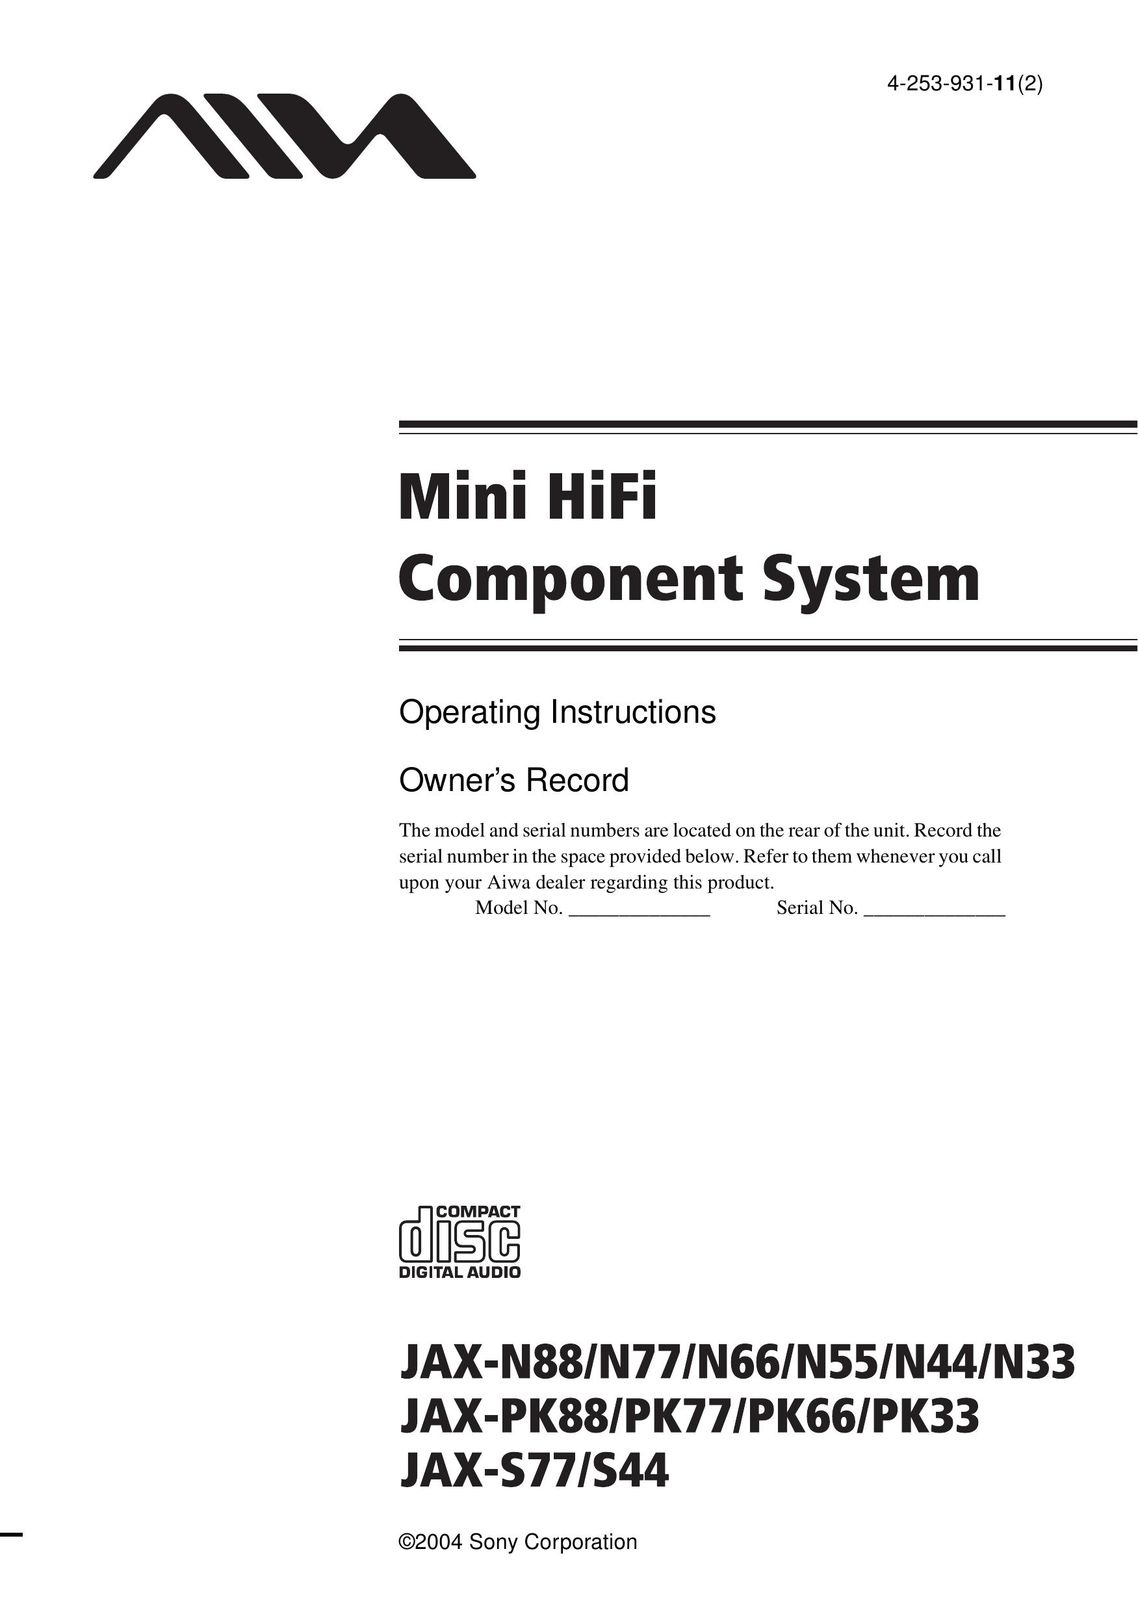 Aiwa JAX-N33 Stereo System User Manual